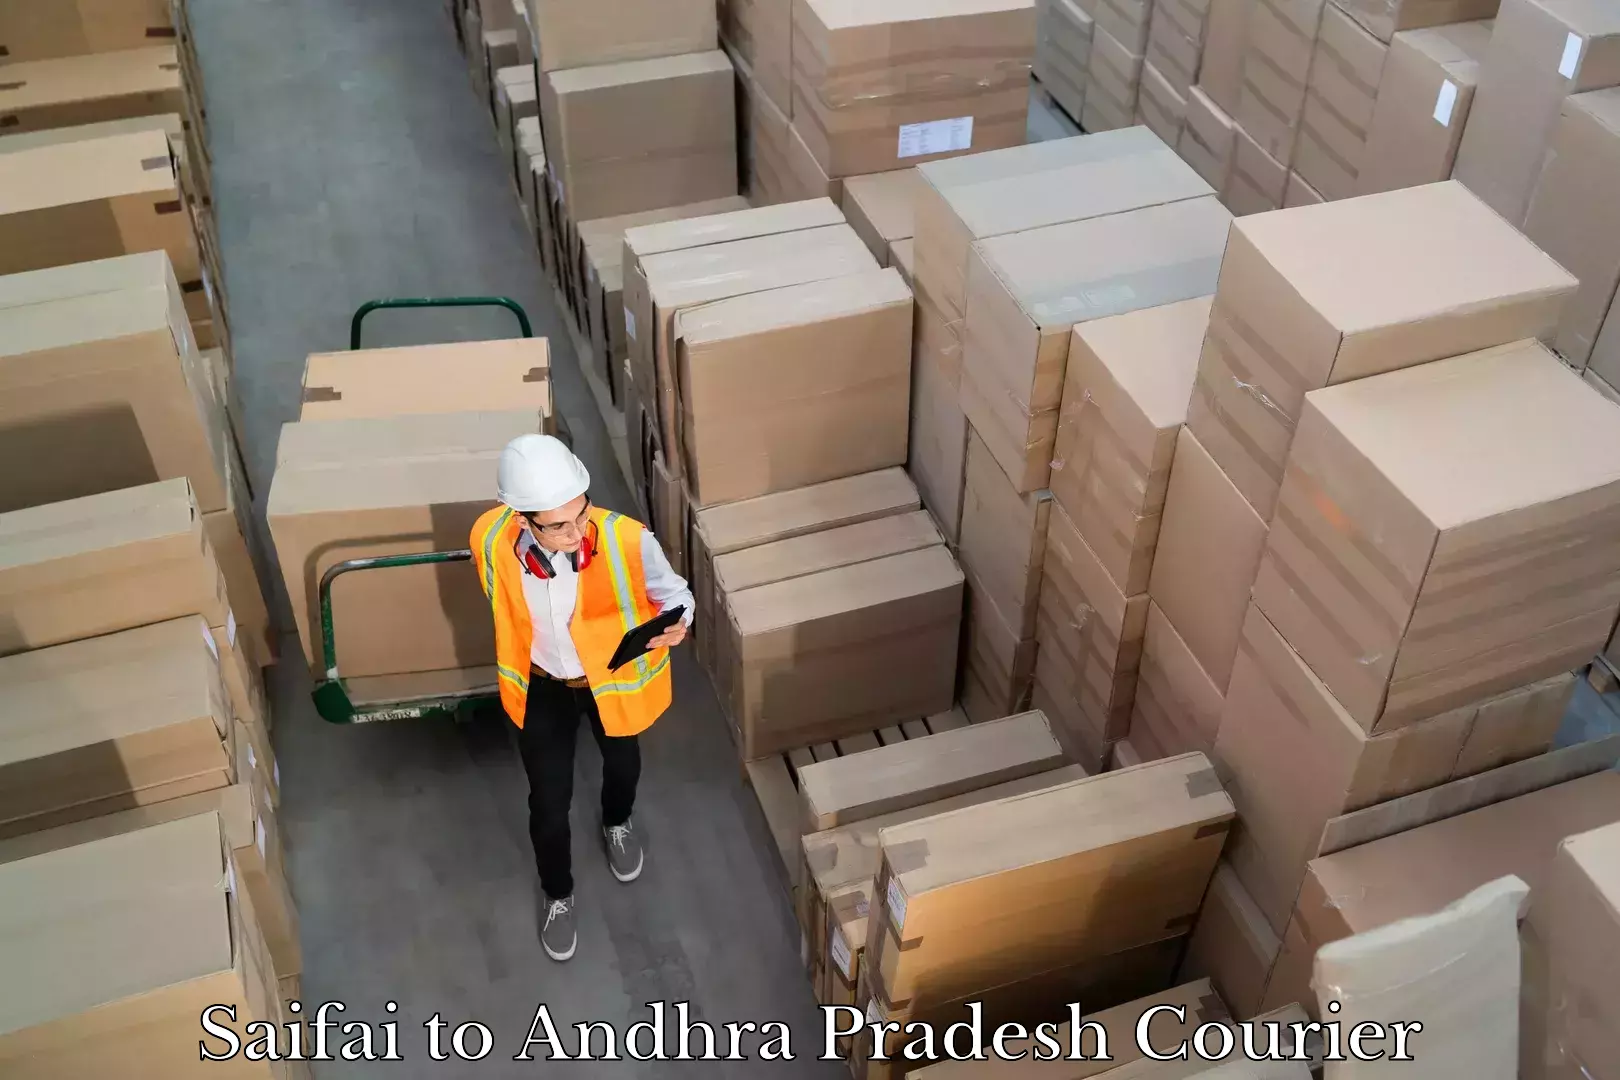 Express logistics service Saifai to Andhra Pradesh